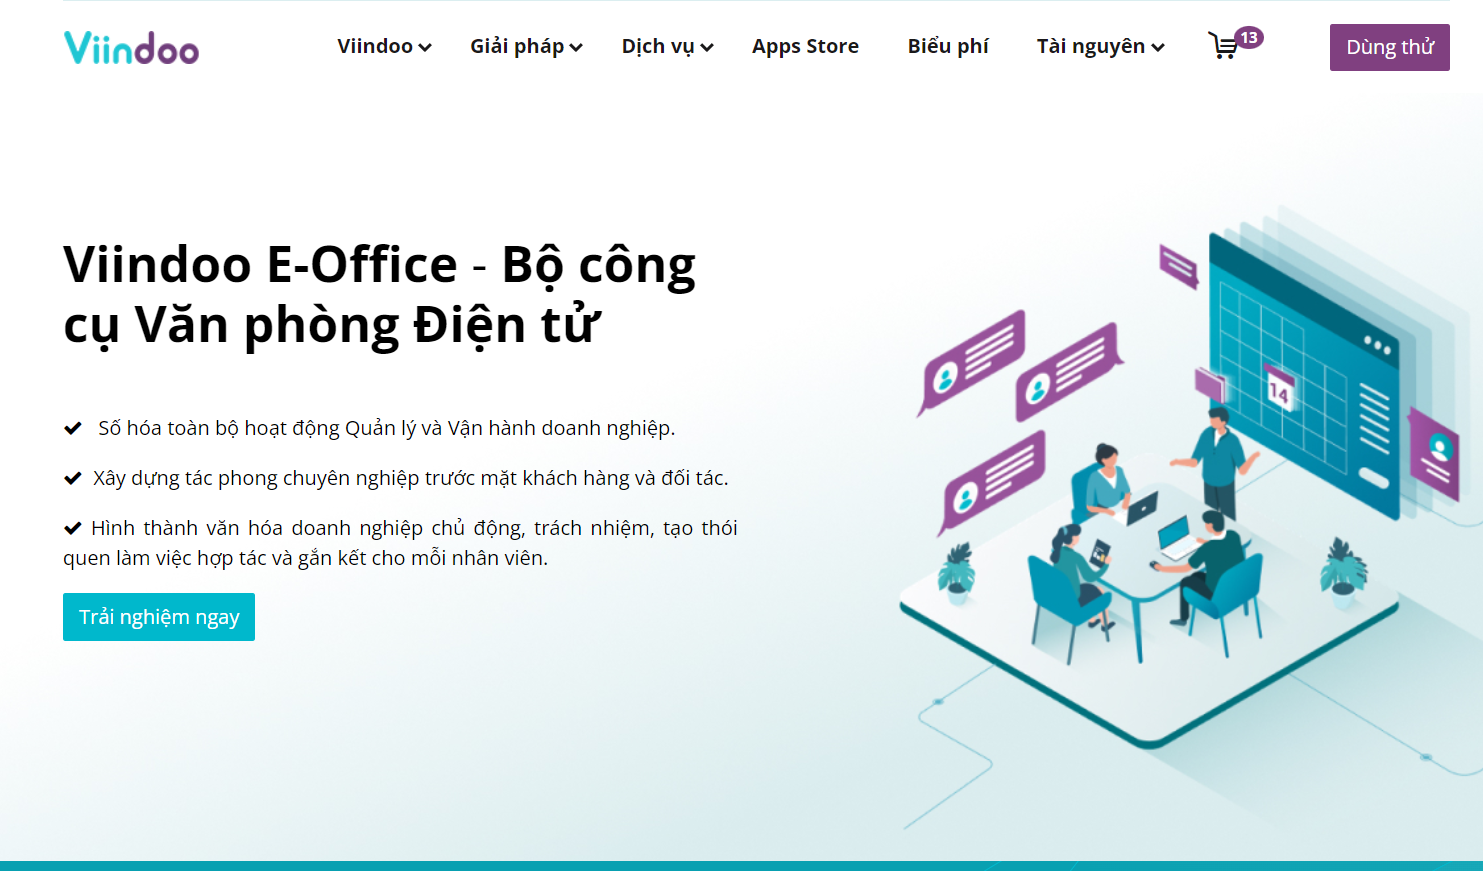 Viindoo E-Office - Bộ công cụ văn phòng điện tử